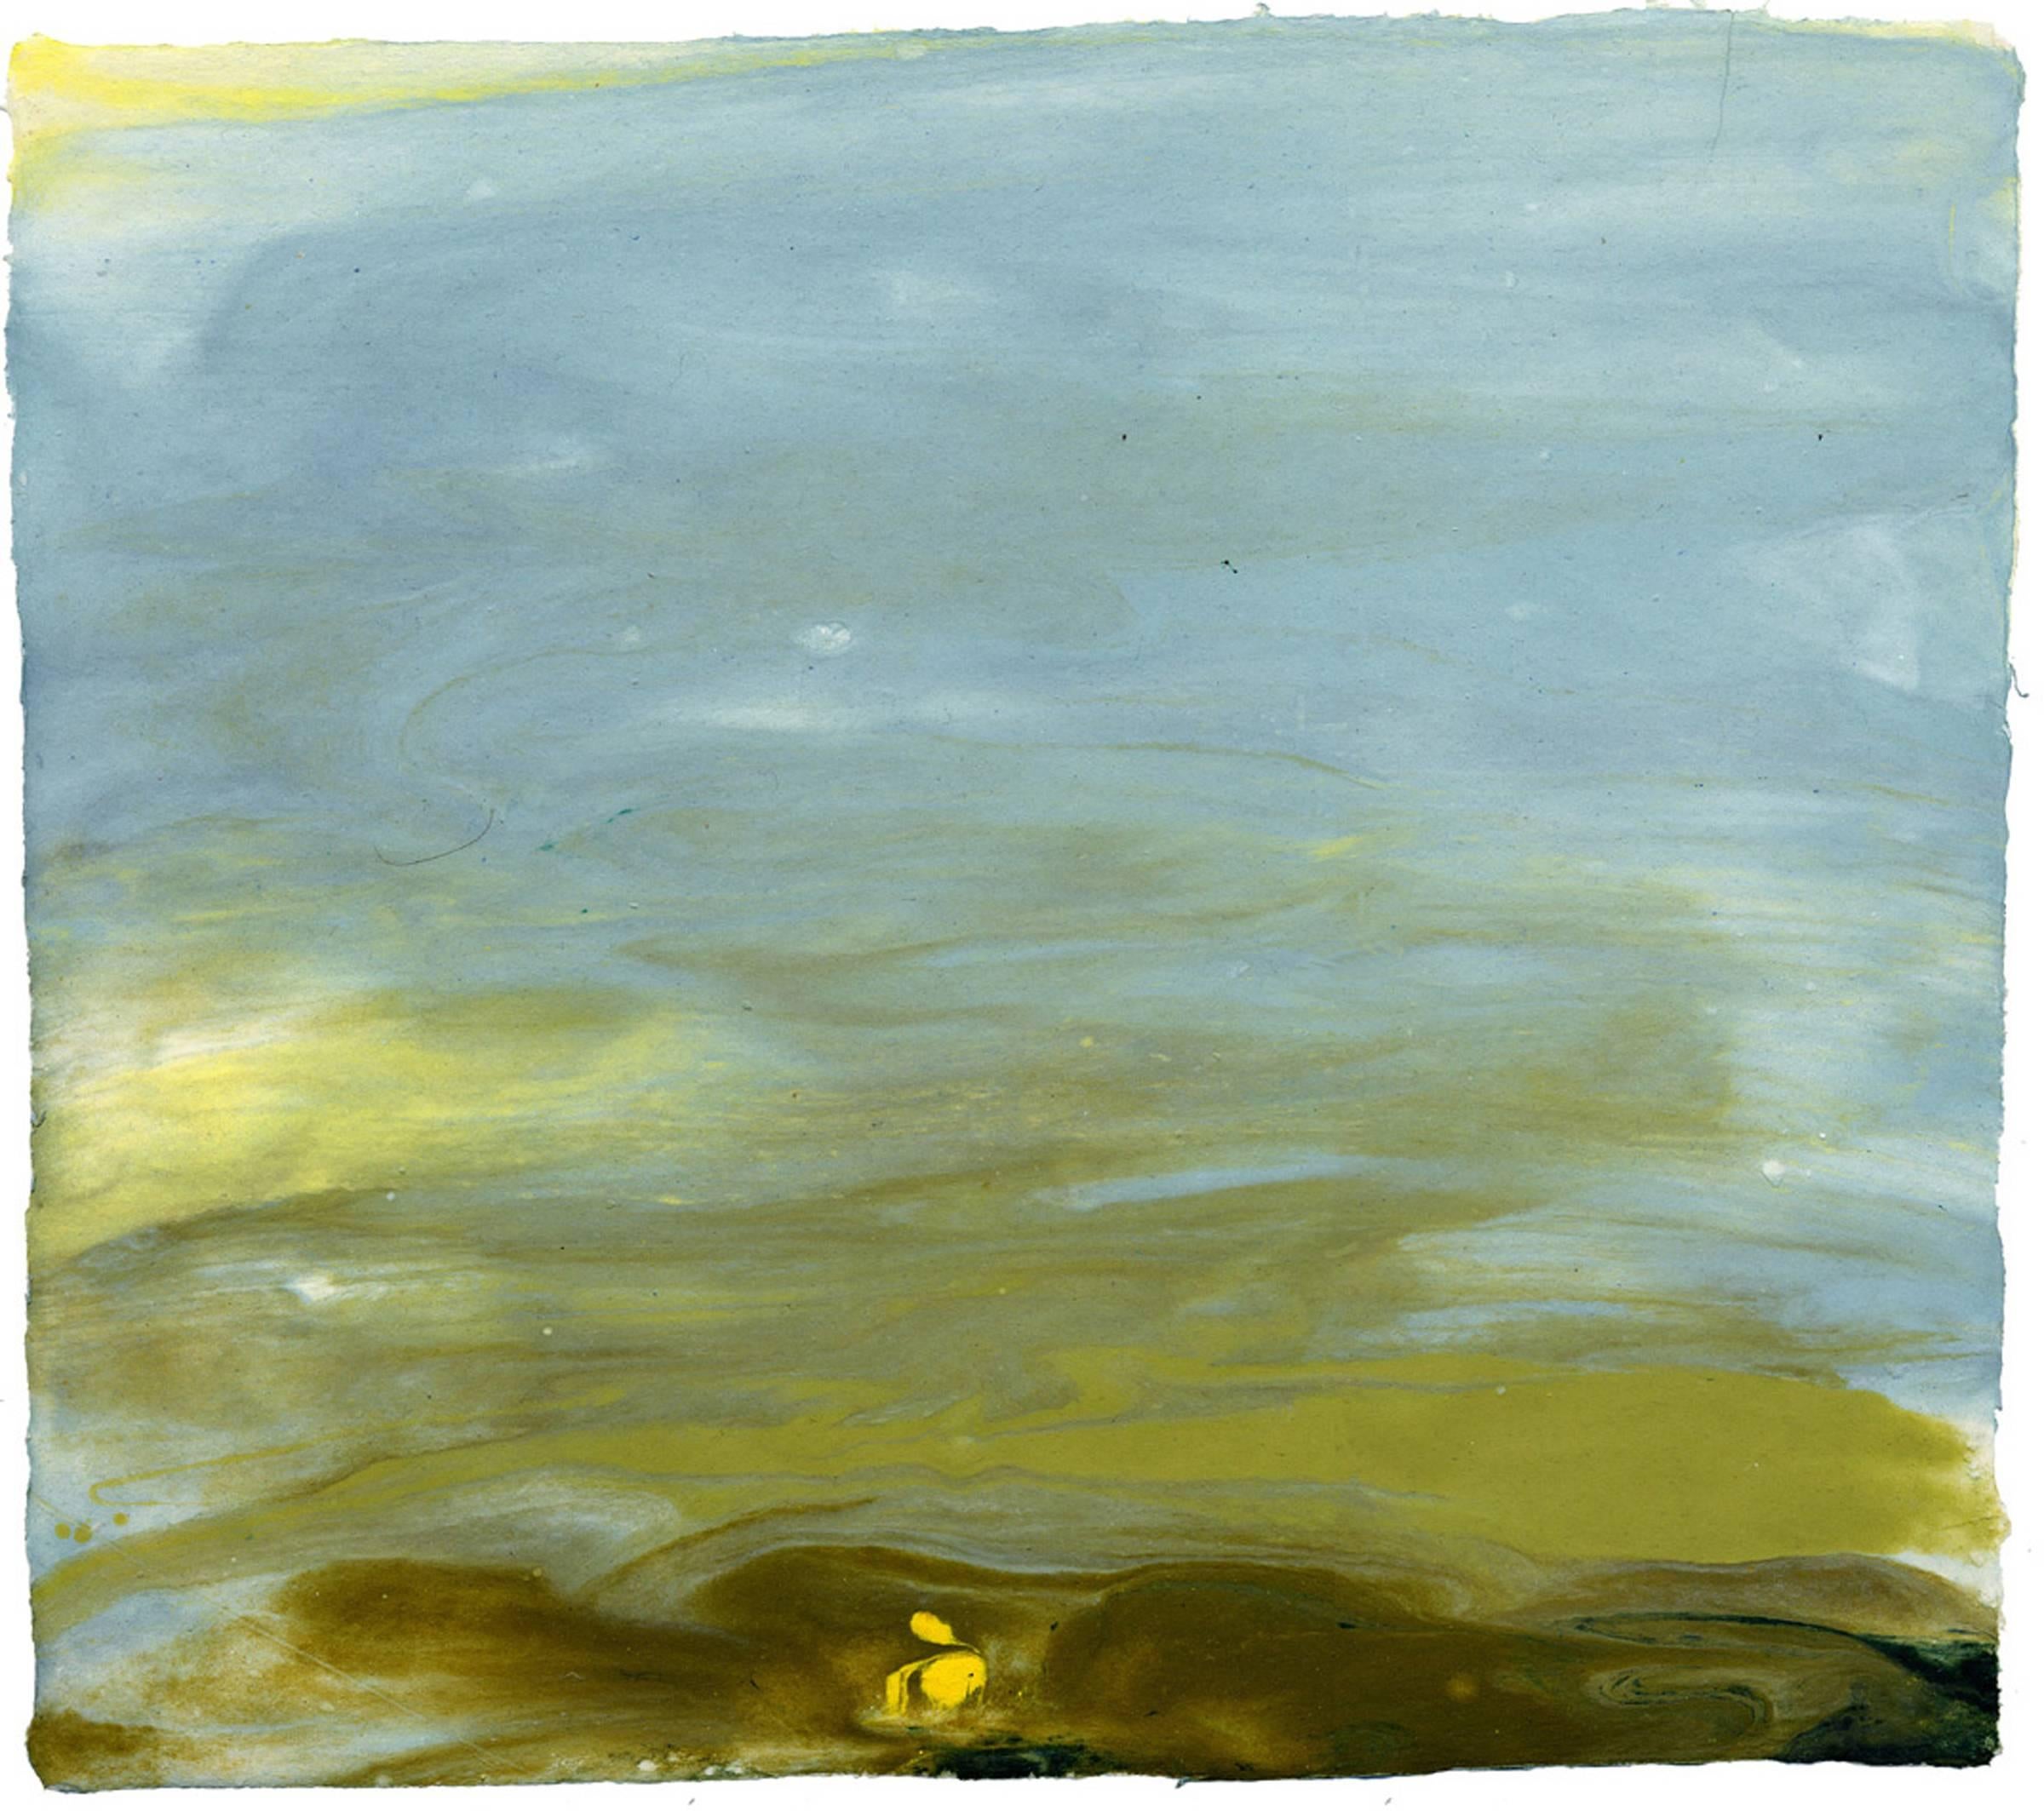 Ellen Kozak, Tree of Names and A River, 2005, Cotton Rag Paper, Pigment 3